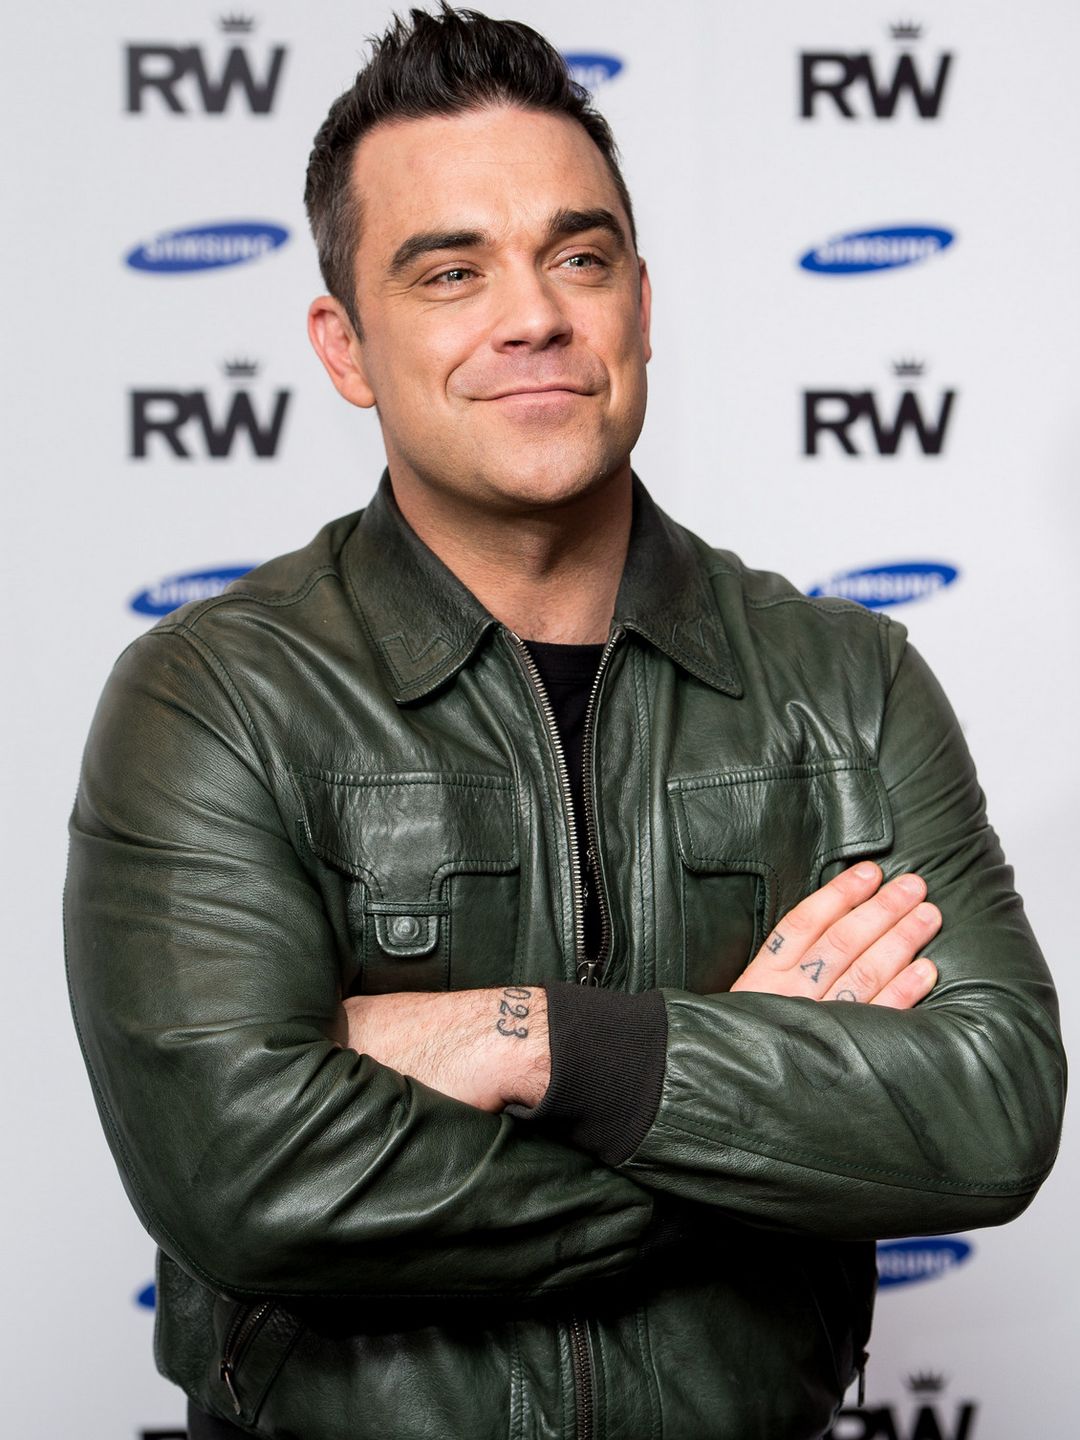 Robbie Williams upbringing